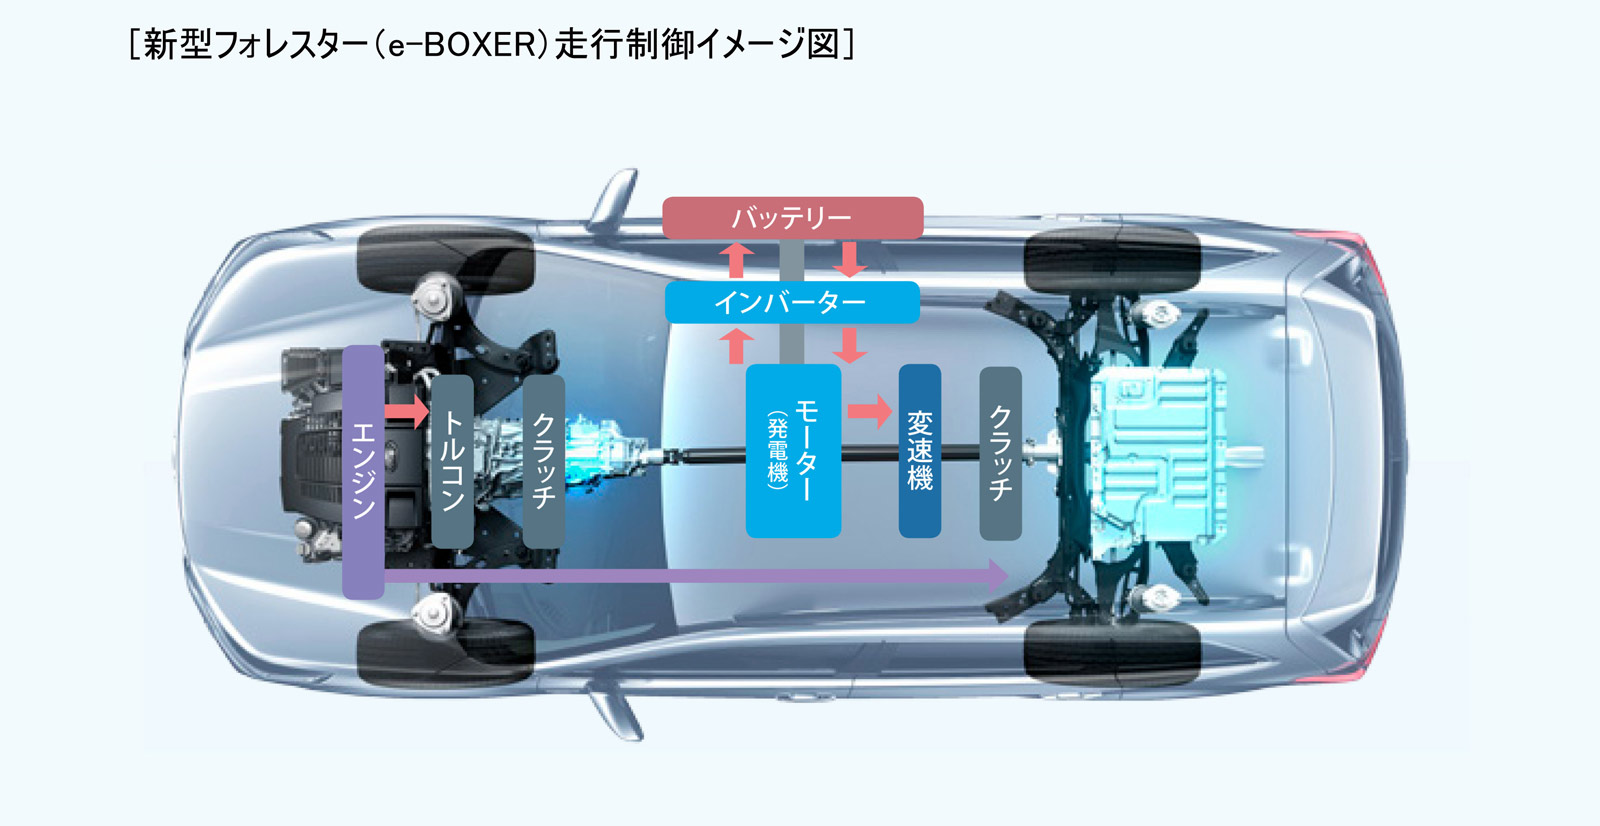 新型フォレスター e-BOXER